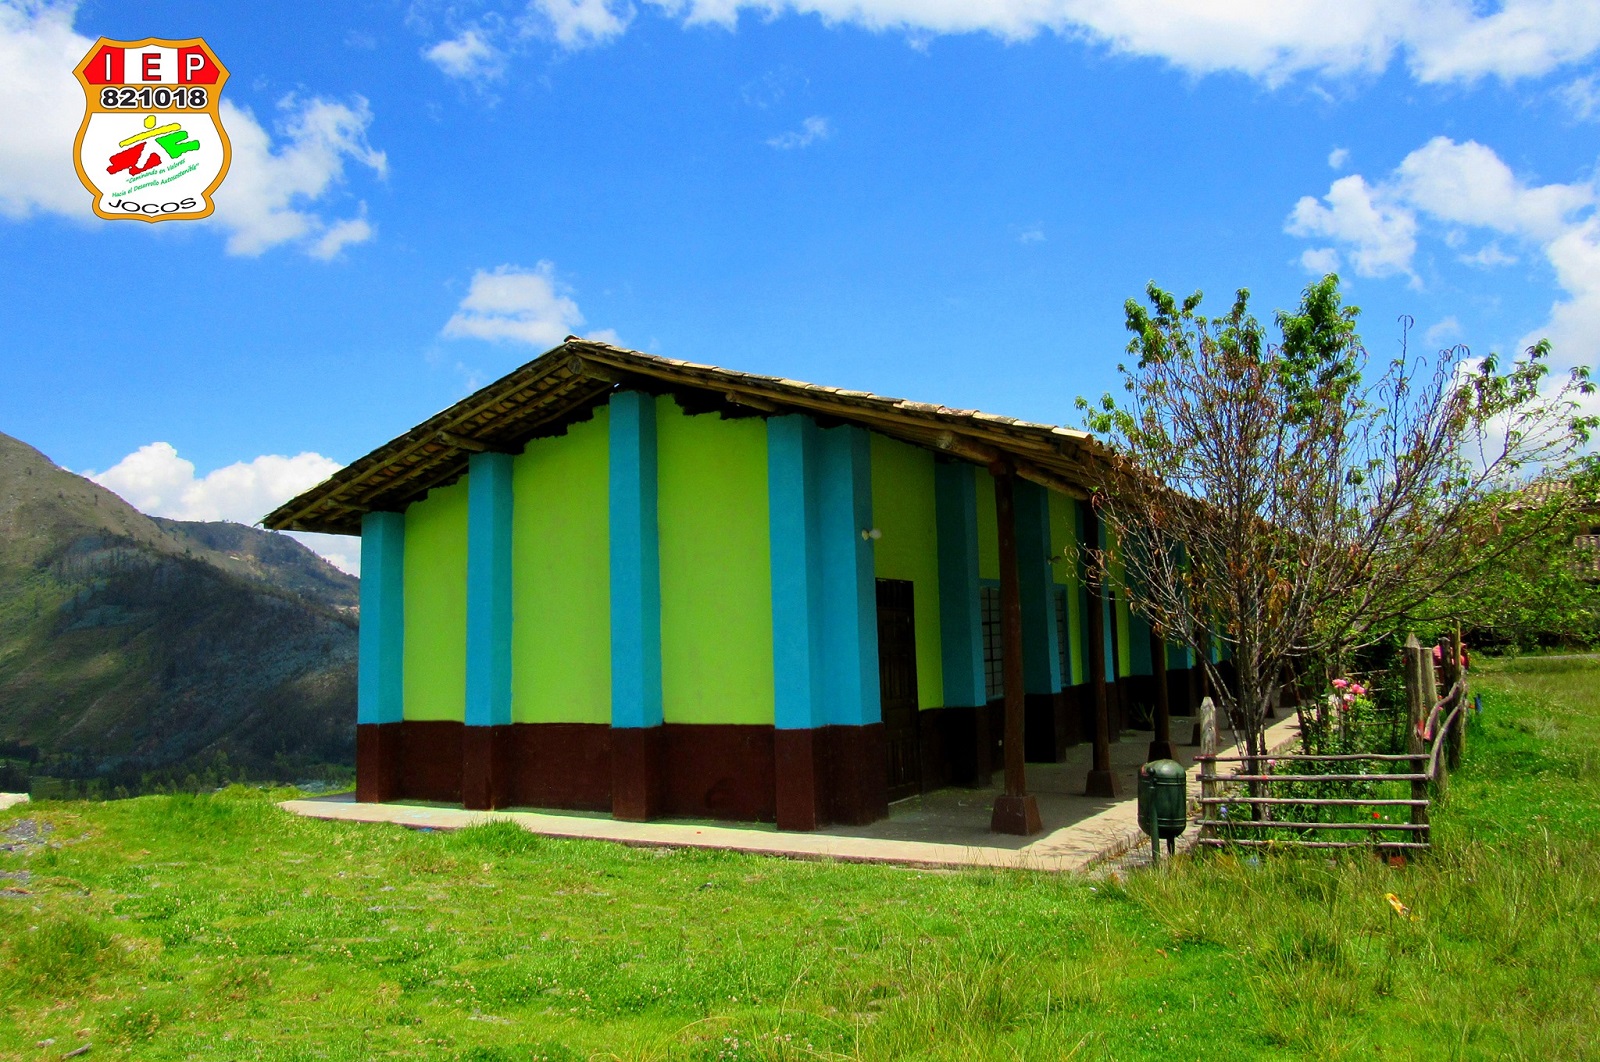 Escuela 821018 - Hacienda Jocos